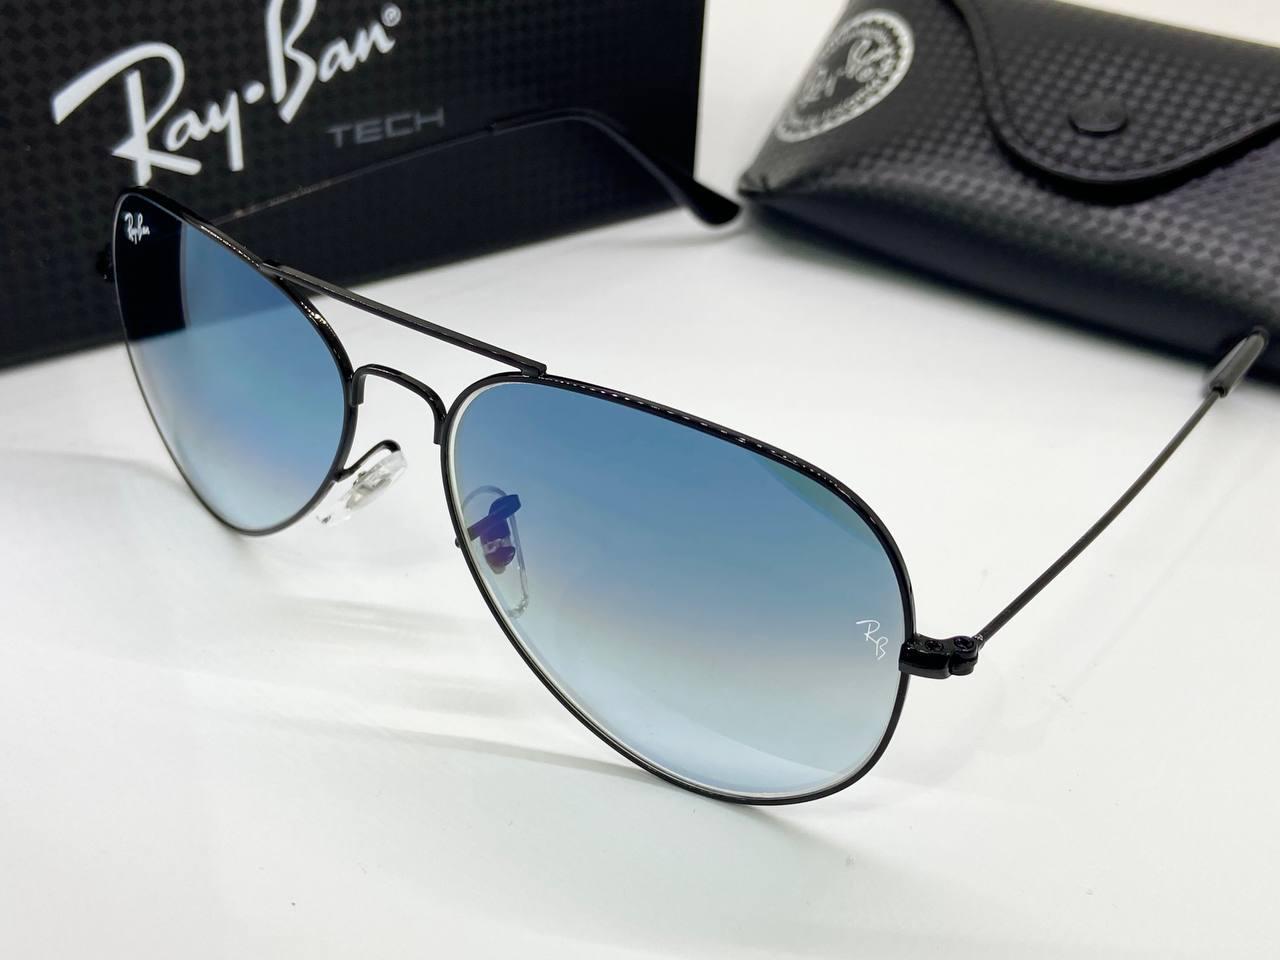 Сонцезахисні окуляри авіатори краплі RB3025 лінзи мінеральне скло синій градієнт у чорній металевій оправі